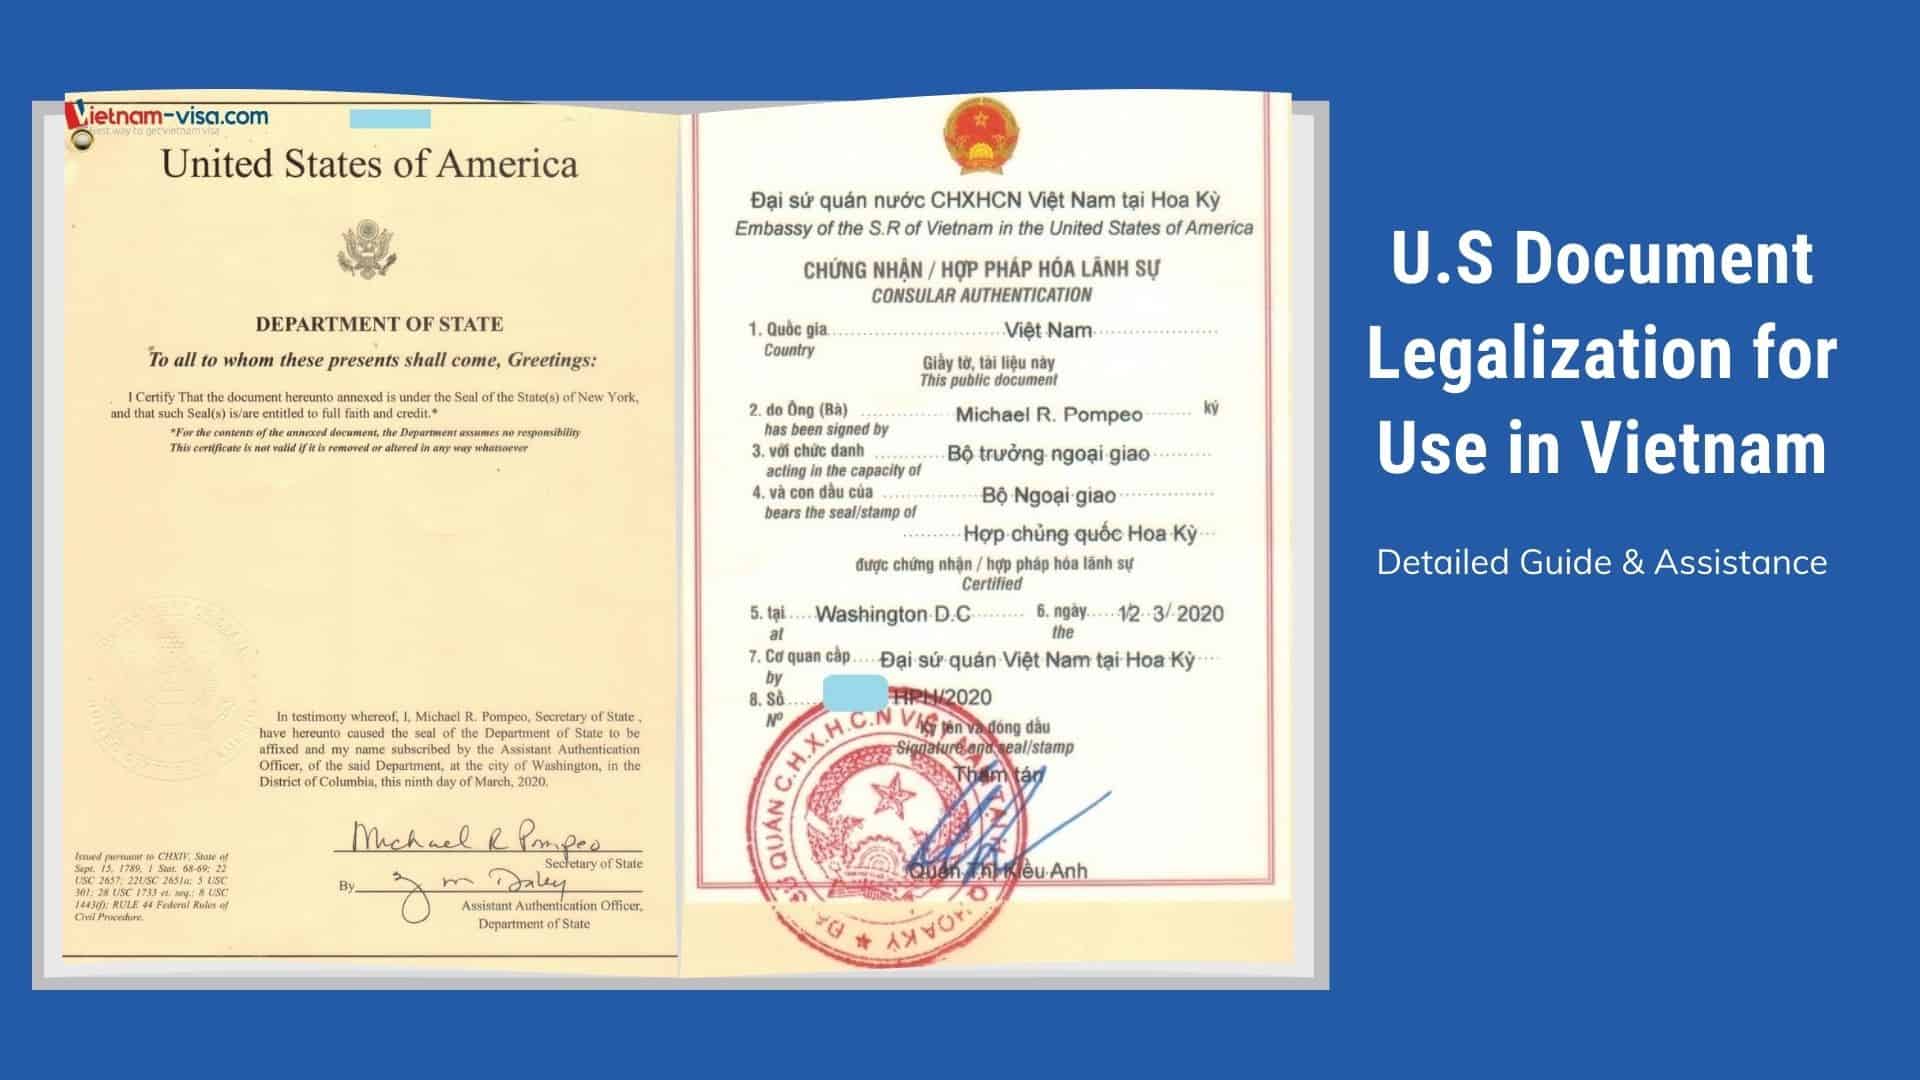 Legalization, US Documents, Vietnam, Guide: Bạn đang cần tìm kiếm các thông tin liên quan đến hồ sơ và thủ tục cho việc tổ chức tài liệu của mình tại Hoa Kỳ, đặc biệt là với Việt Nam? Bức ảnh và hướng dẫn liên quan sẽ giúp bạn có được những điều cần thiết.